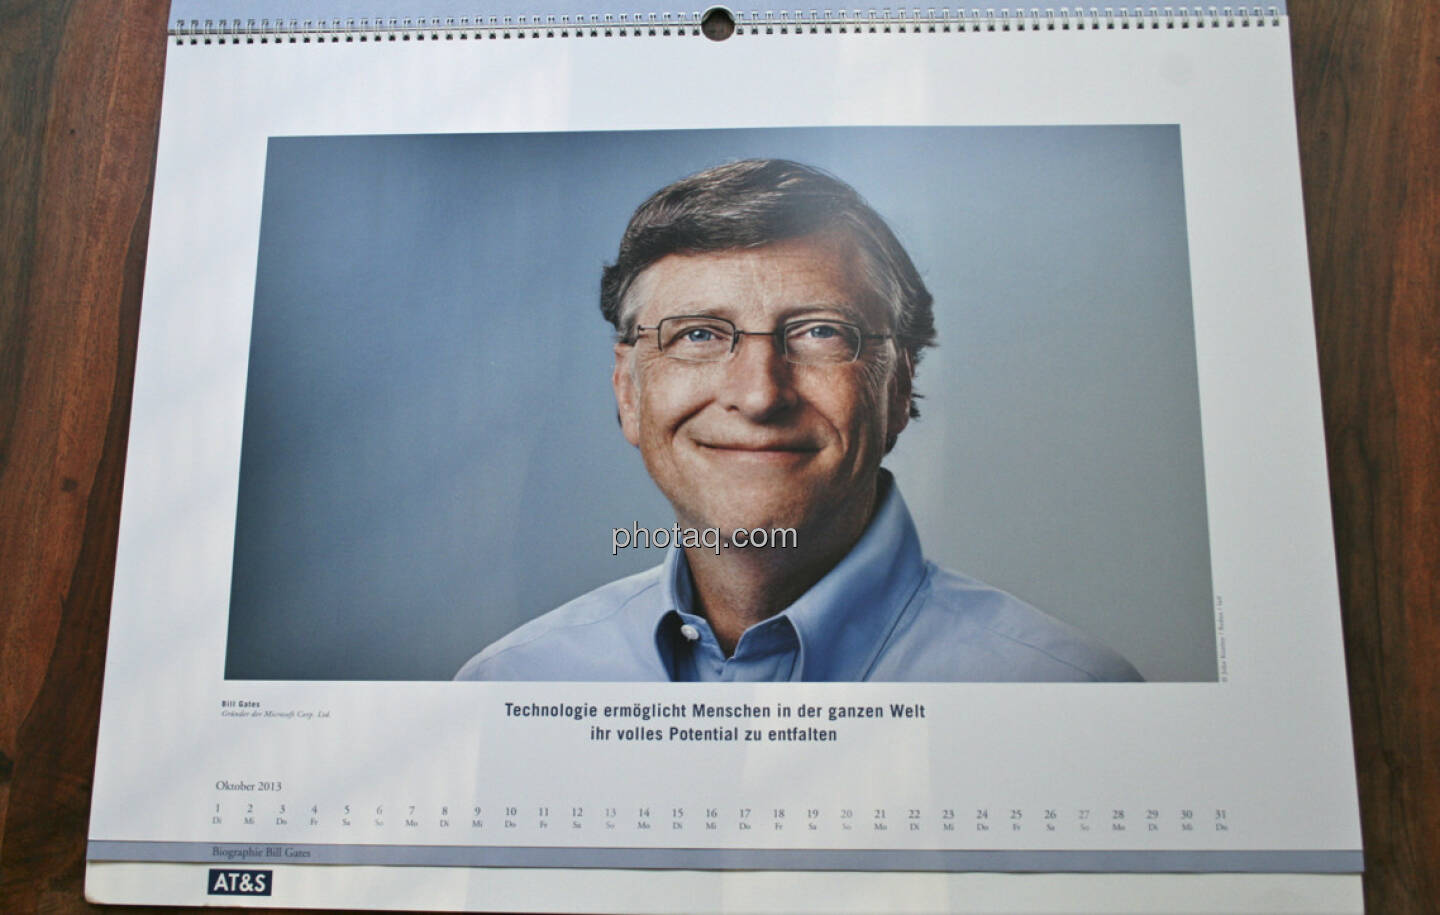 Bill Gates, Gründer der Microsoft Corp. Ltd. Technologie ermöglicht Menschen in der ganzen Welt, ihr volles Potenzial zu entfalten ... aus dem AT&S-Kalender 2013, konzipiert und koordiniert von Martin Theyer